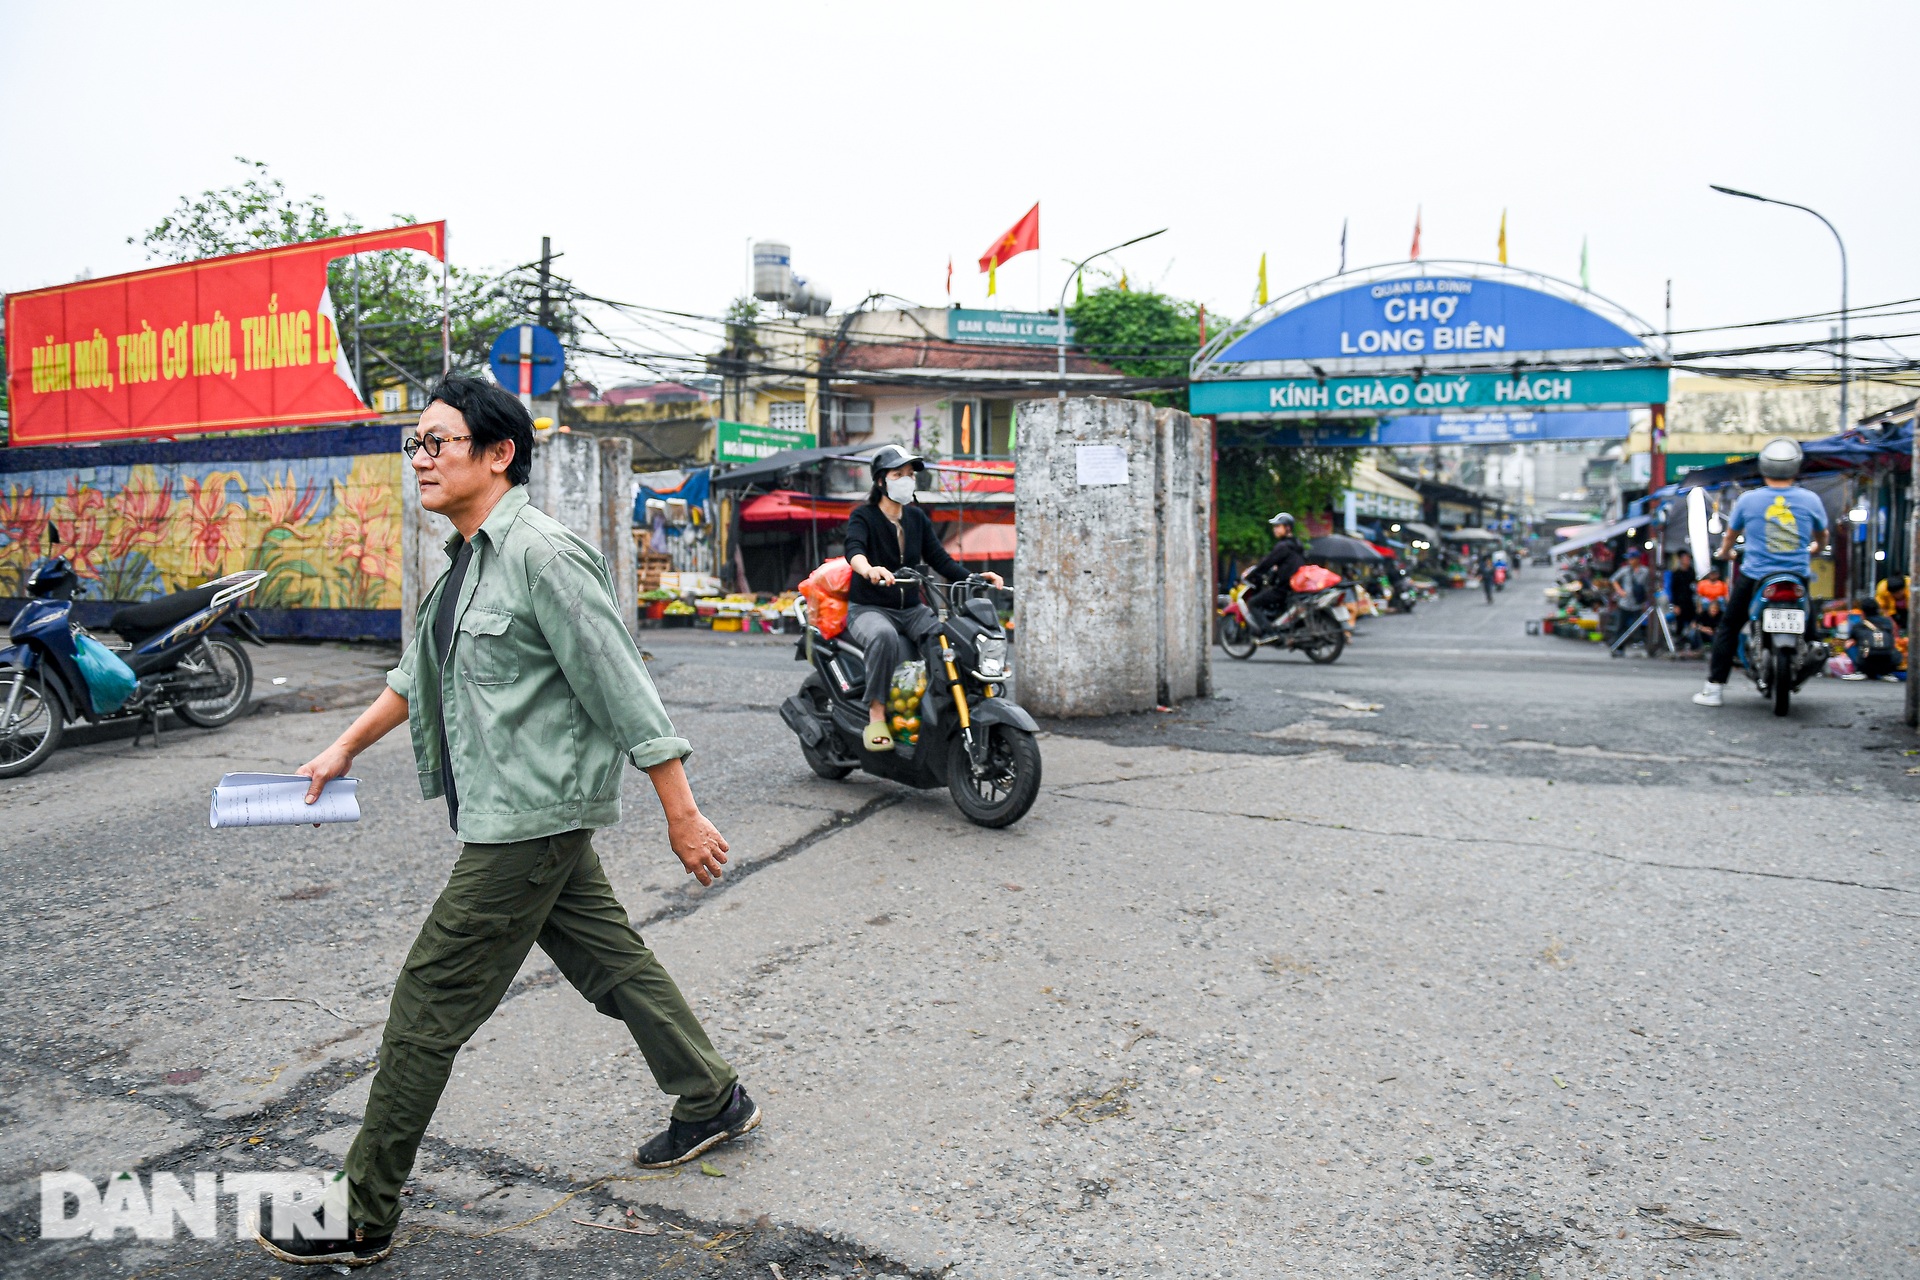 Hoàng Hải chở NSƯT Thanh Quý trên xe máy cà tàng, ngủ cạnh bãi rác - Ảnh 5.